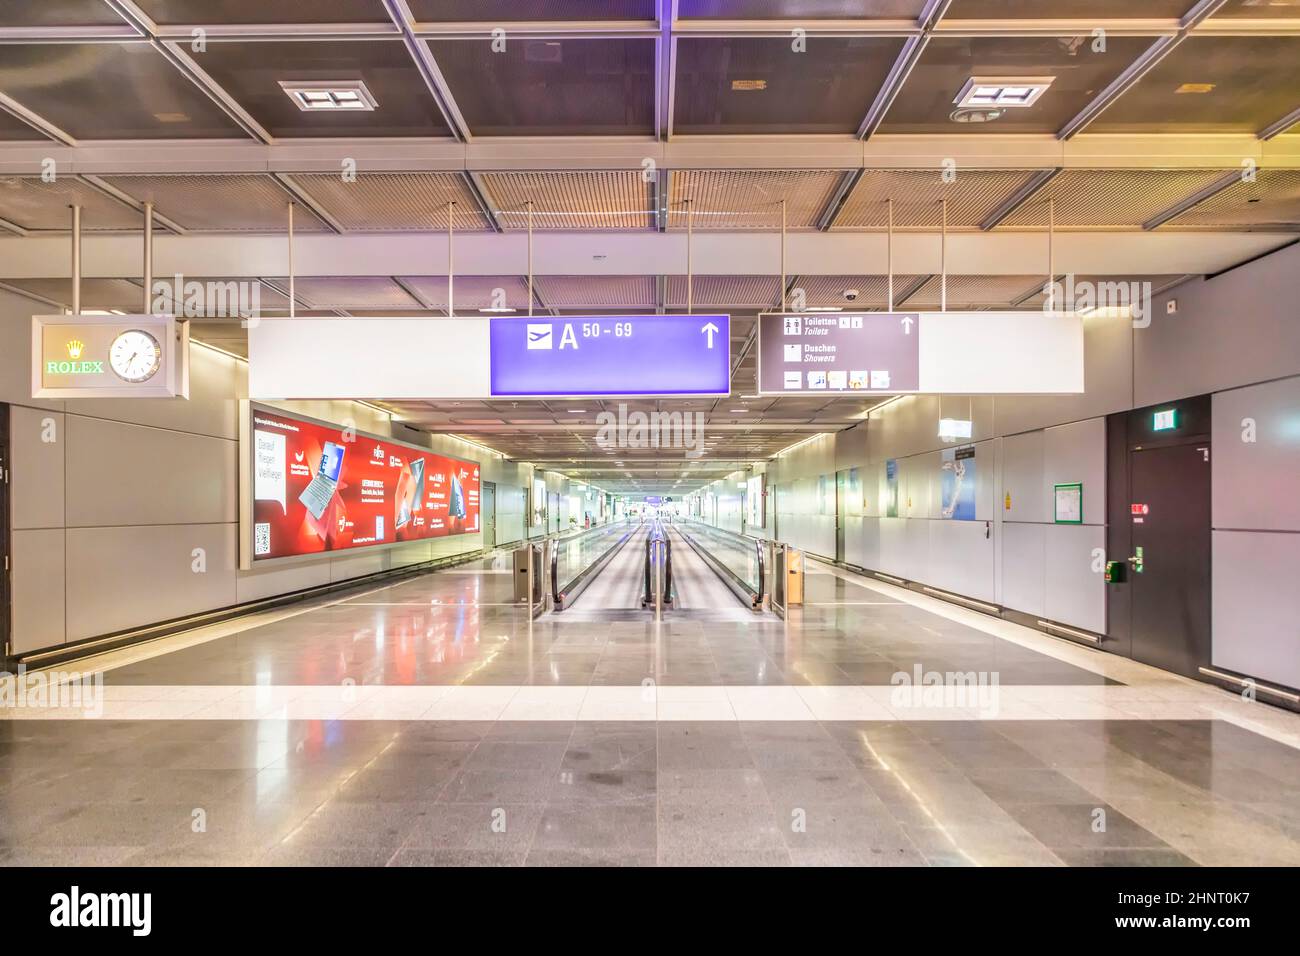 Vider le hall De départ A du terminal 1 de l'aéroport en raison d'une infection par Corona sans passagers Banque D'Images